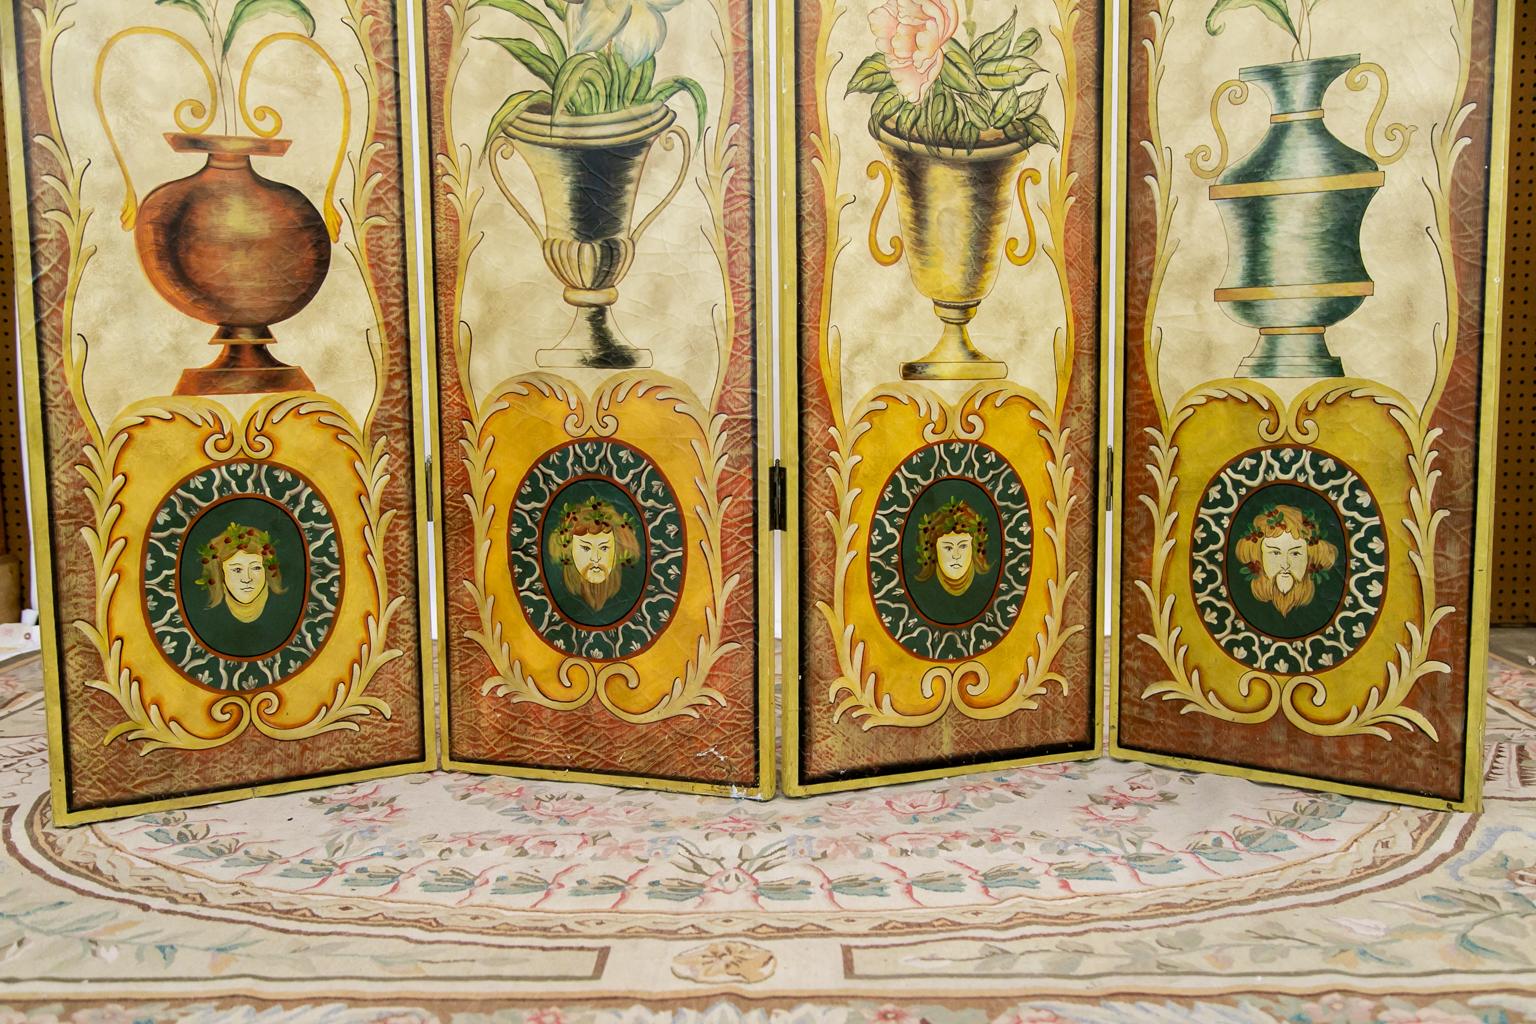 Ce paravent est peint avec des urnes classiques, des fleurs et des guirlandes à valence sarcelle surmontant le cartouche central.

Un panneau mesure : 17 7/8 